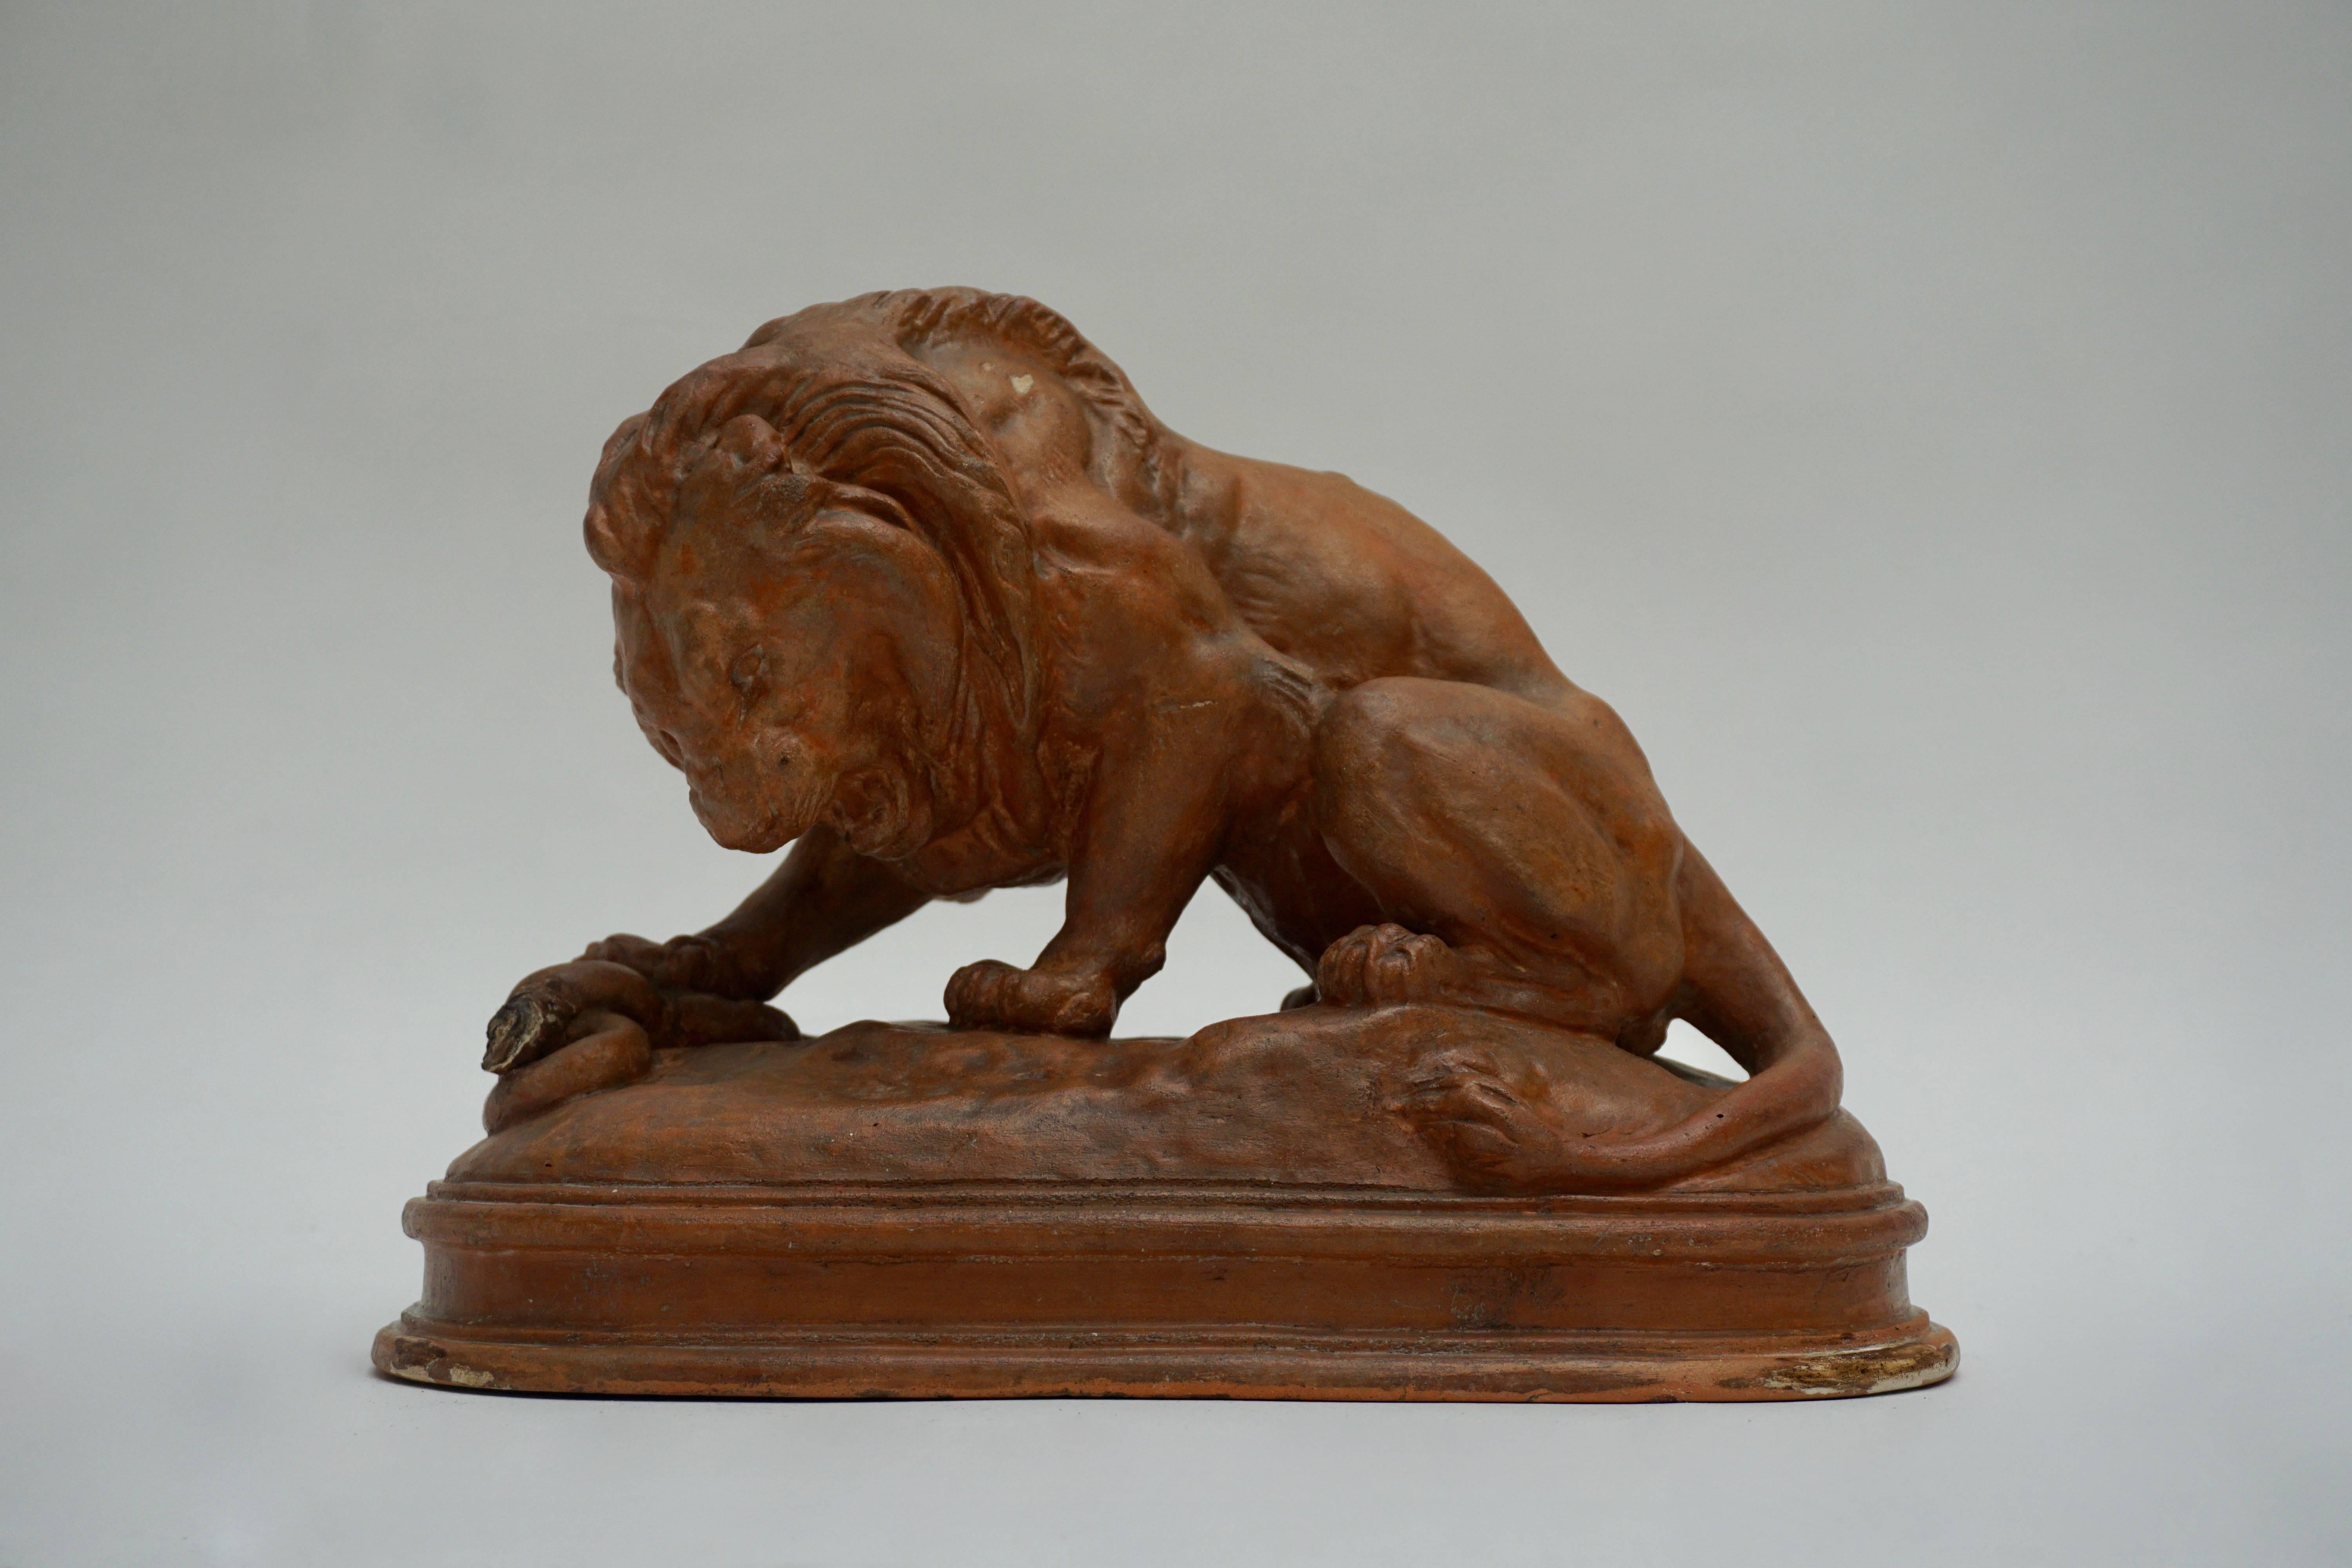 Sculpture de lion en terre cuite.
Mesures : Largeur 34 cm.
Hauteur 25 cm.